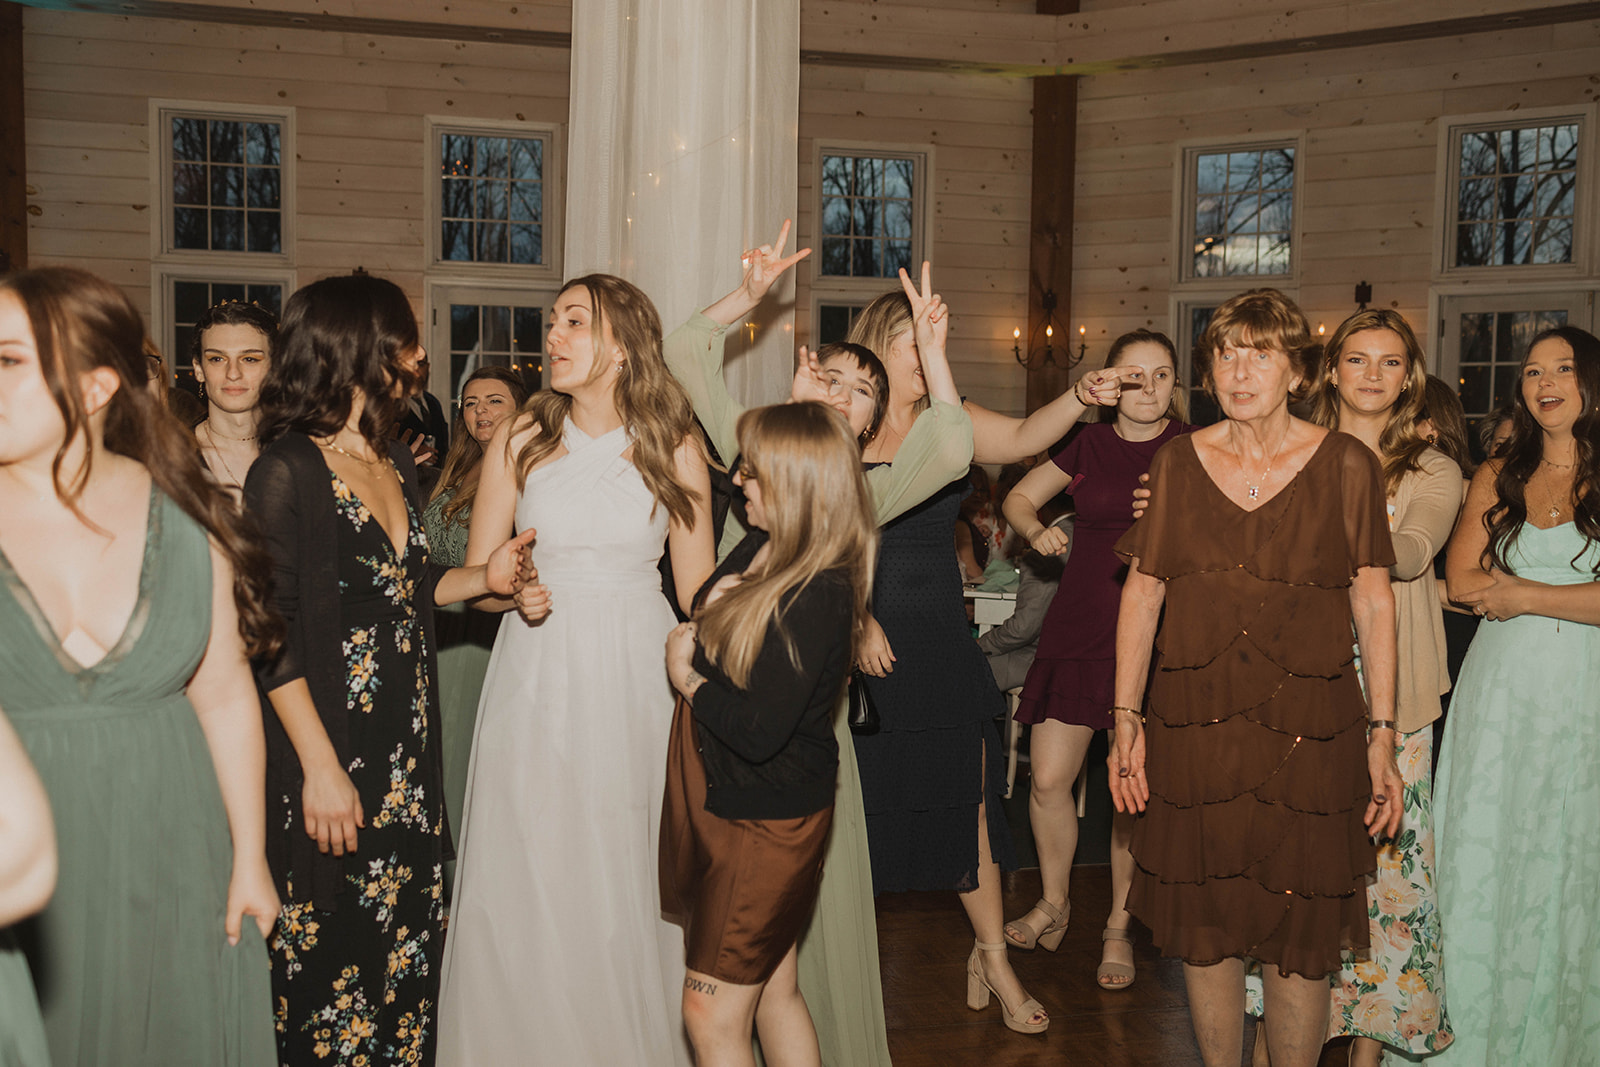 Wedding guests enjoy the dance floor